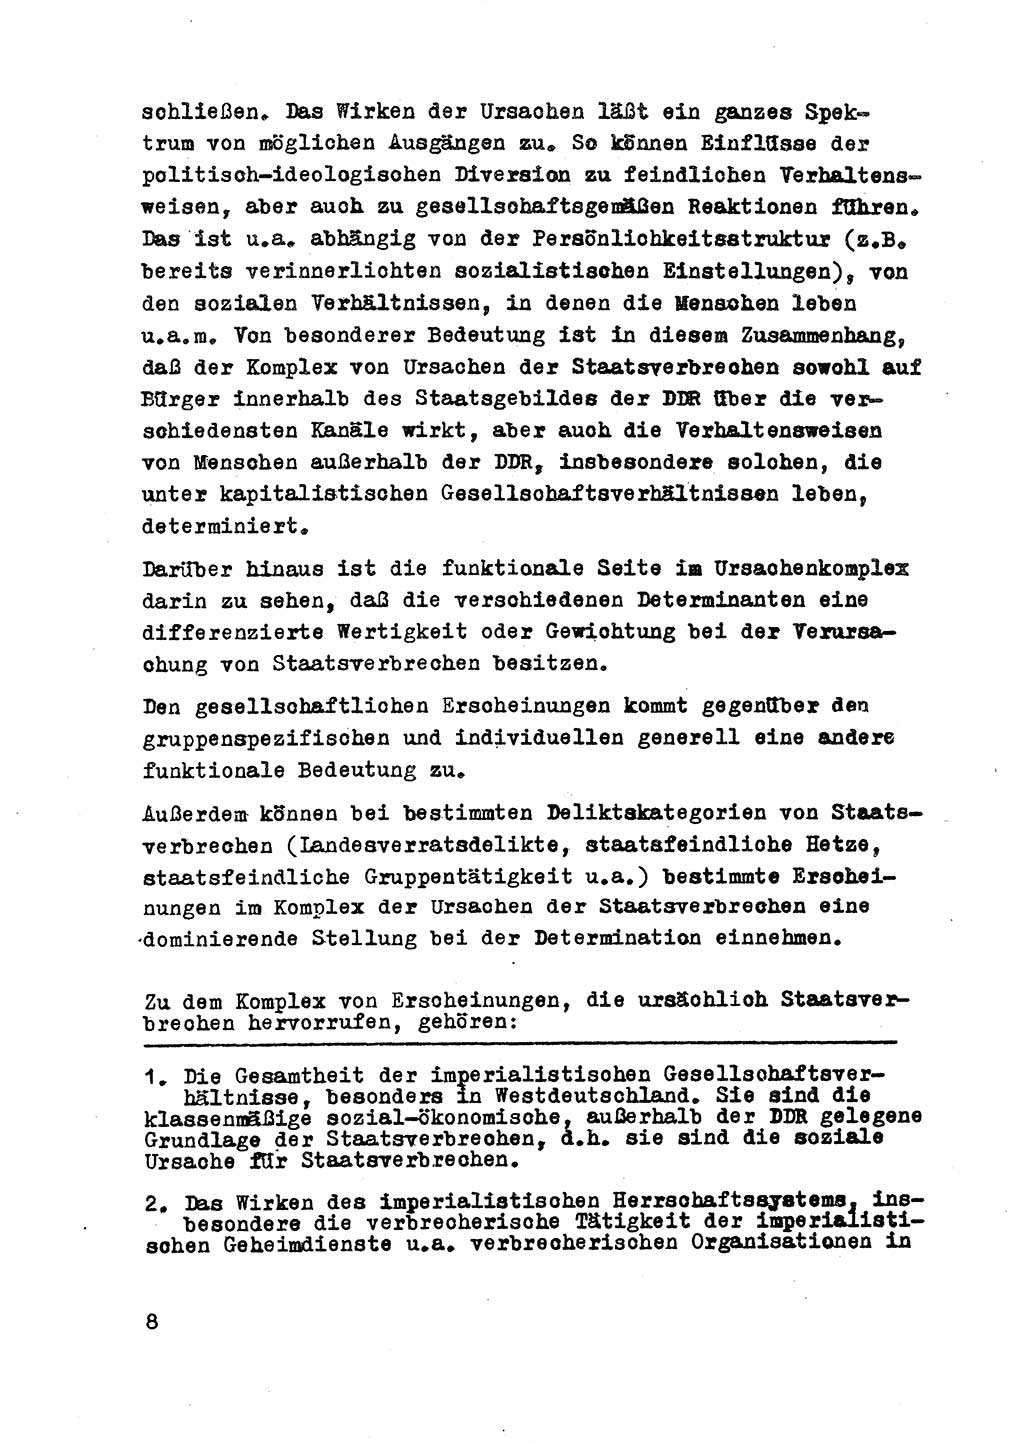 Strafrecht der DDR (Deutsche Demokratische Republik), Besonderer Teil, Lehrmaterial, Heft 2 1969, Seite 8 (Strafr. DDR BT Lehrmat. H. 2 1969, S. 8)